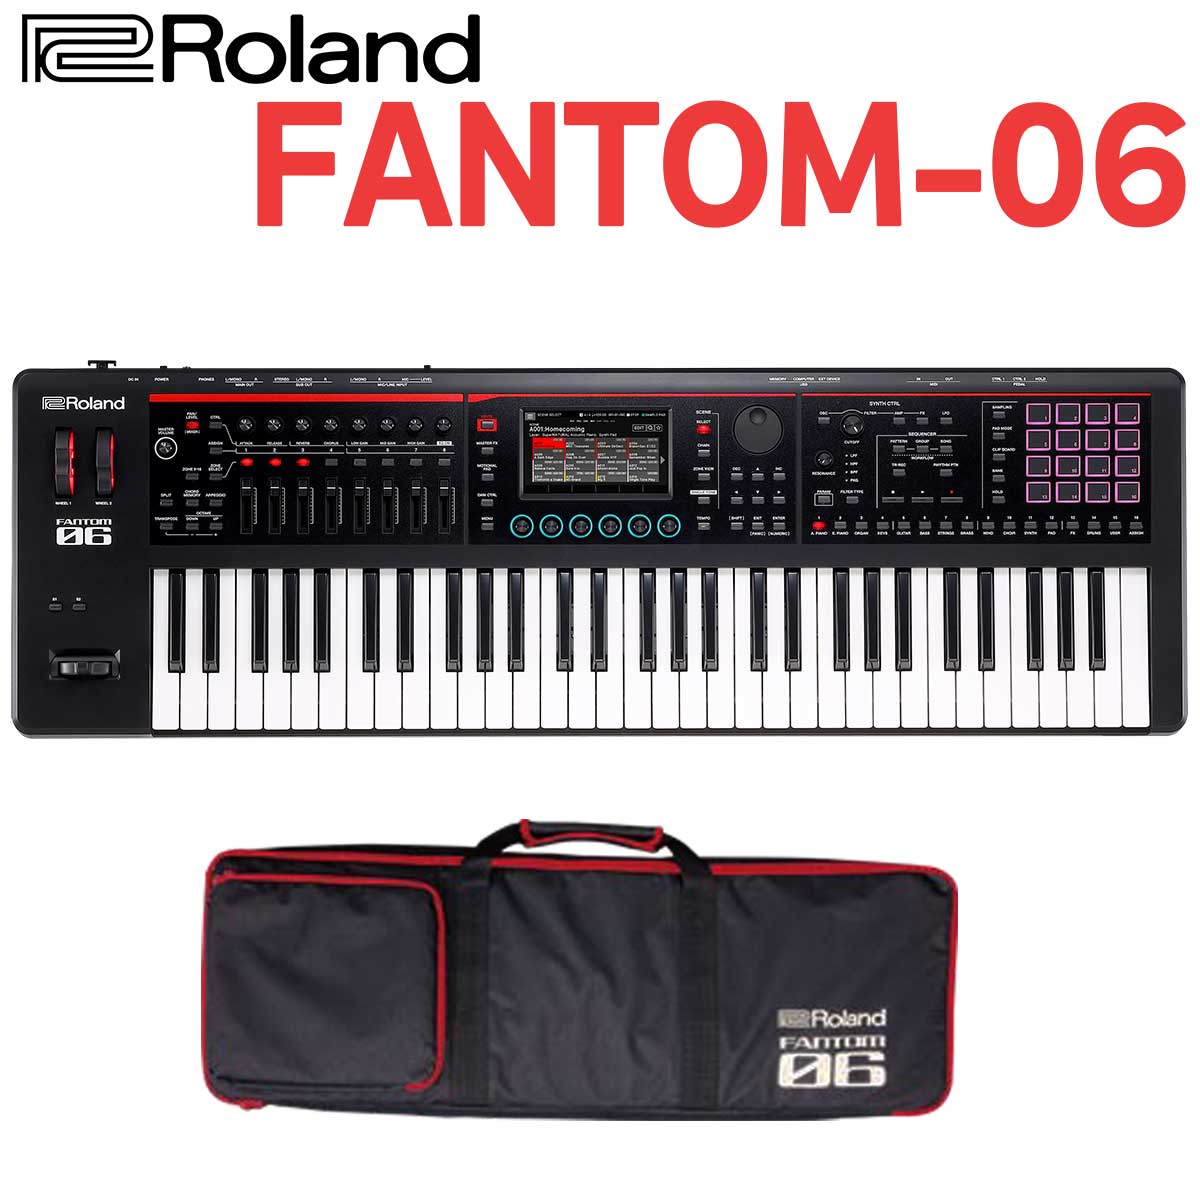 RolandFantom-06 